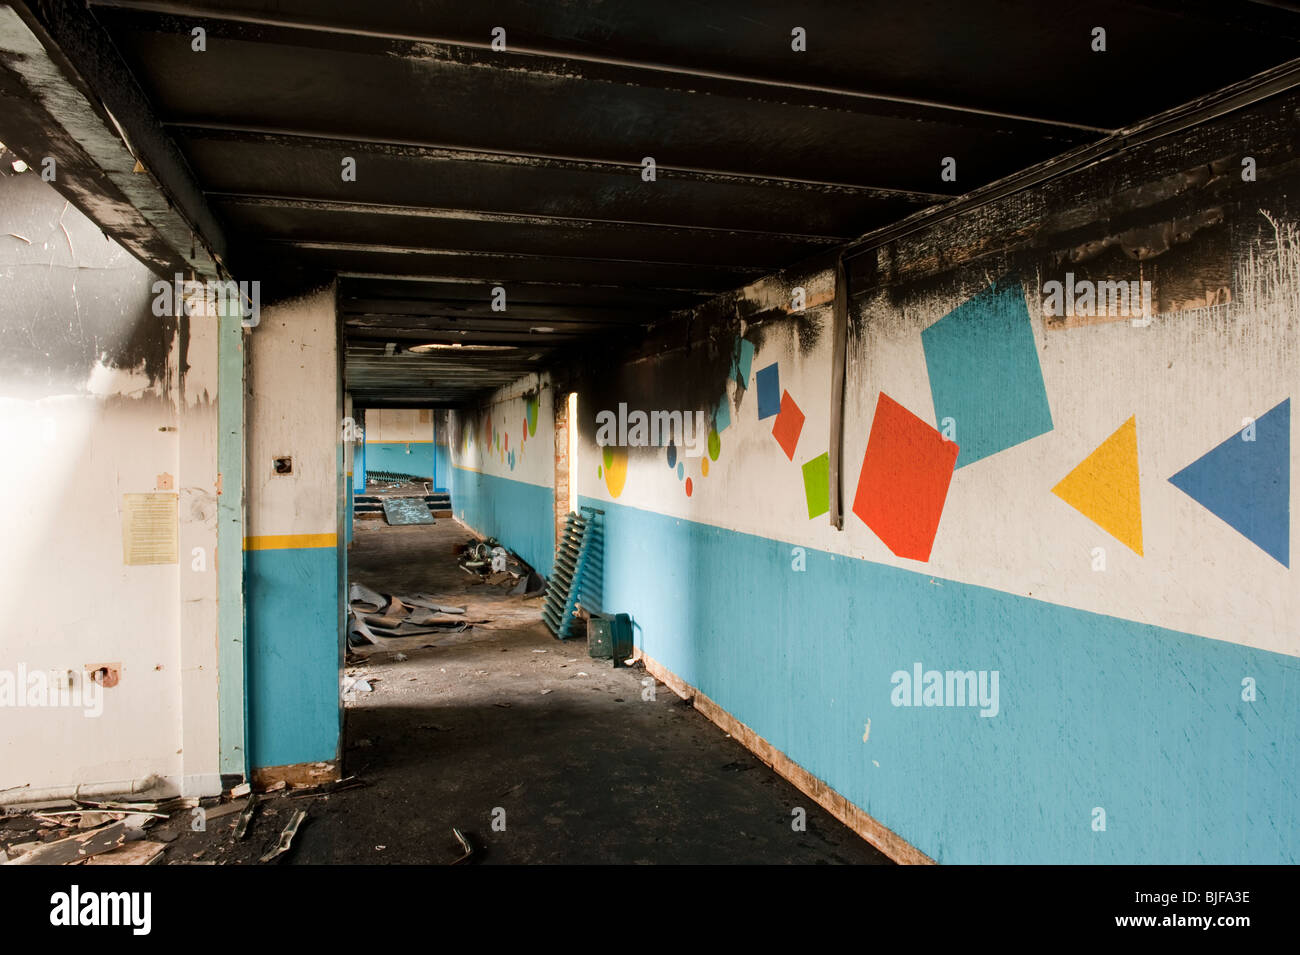 Los daños por humo y fuego al corredor de la escuela Foto de stock